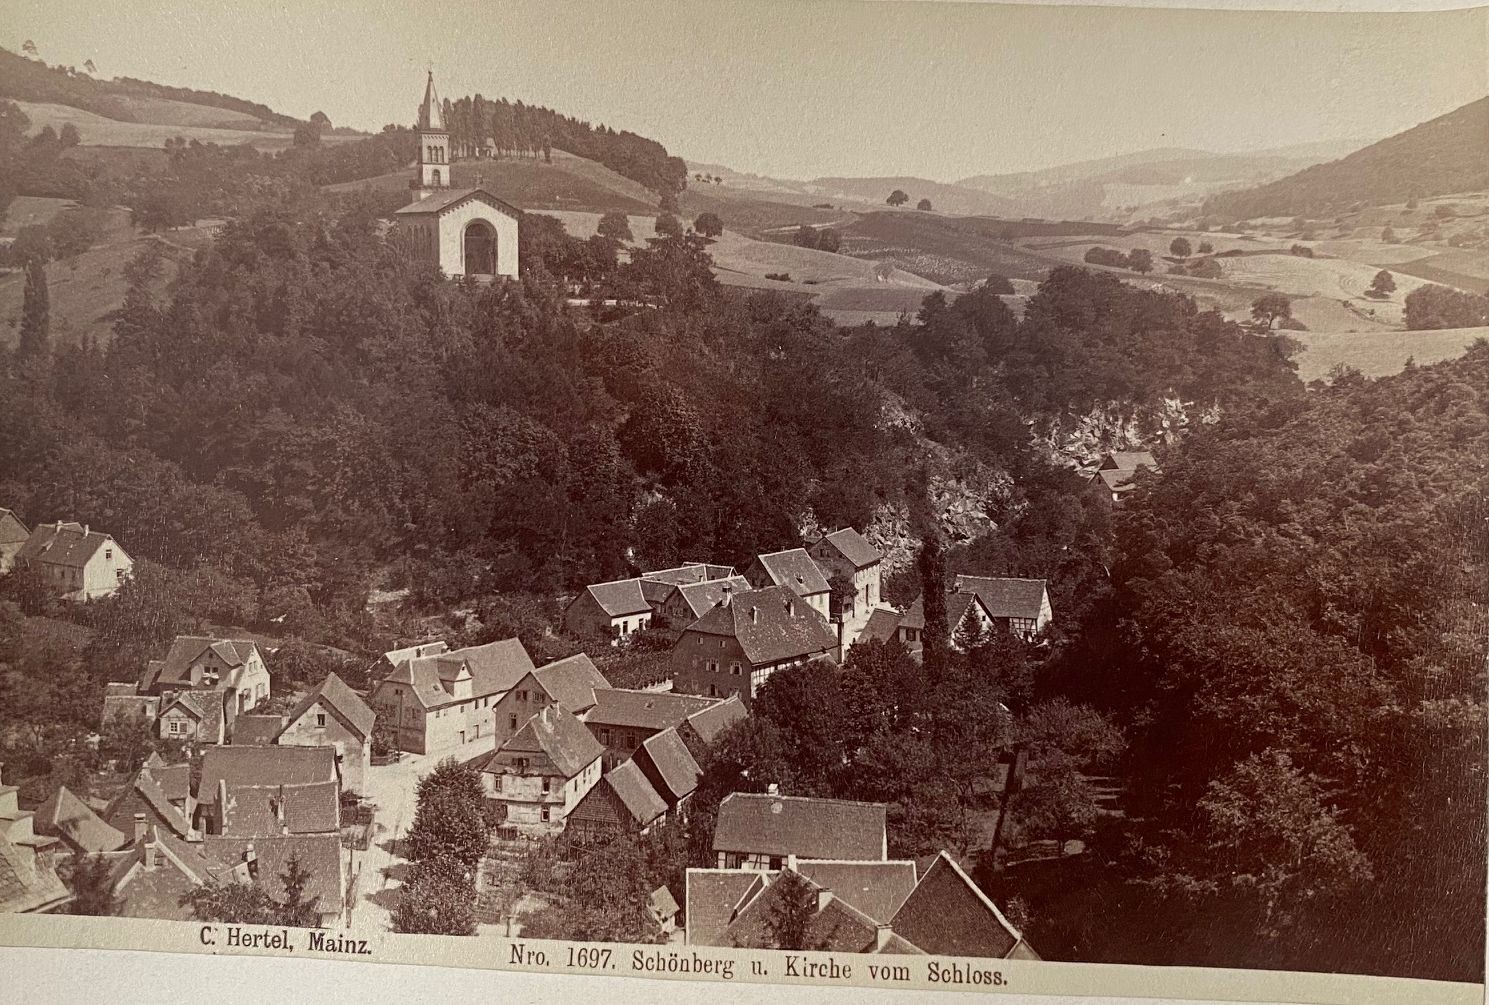 Fotografie, Carl Hertel No. 1697, Schönberg u. Kirche vom Schloss, ca. 1885 (Taunus-Rhein-Main - Regionalgeschichtliche Sammlung Dr. Stefan Naas CC BY-NC-SA)